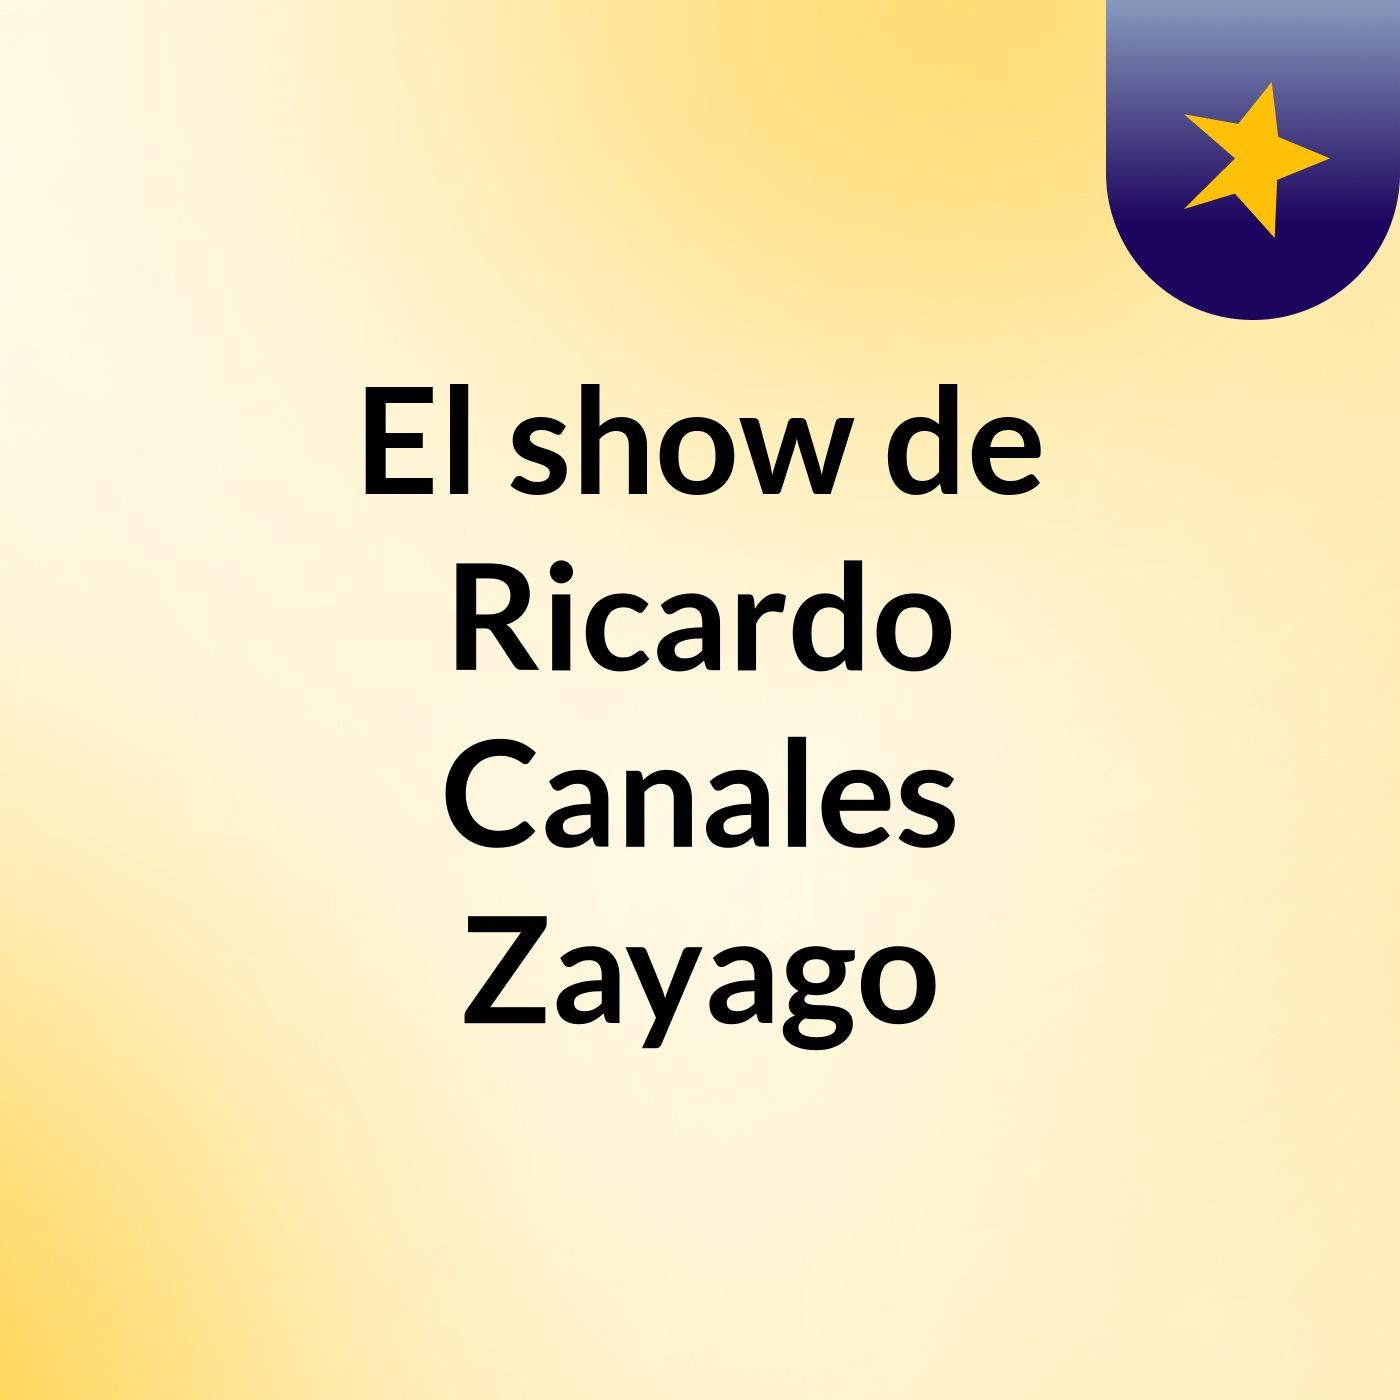 El show de Ricardo Canales Zayago